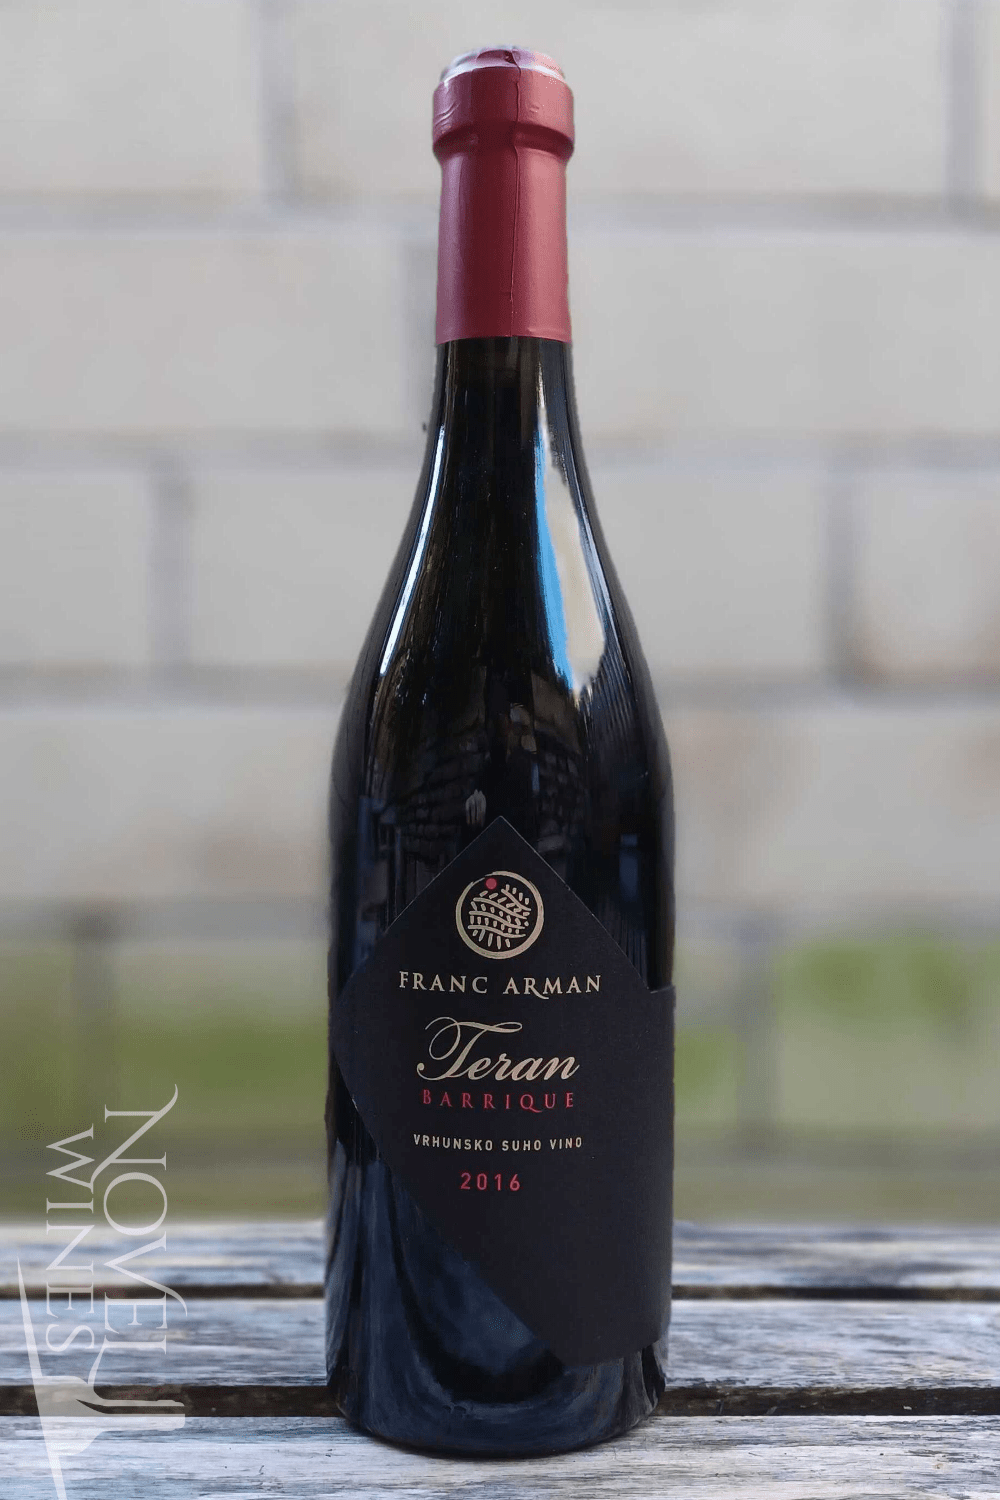 Franc Arman Red Wine Franc Arman Teran Barrique 2016, Croatia